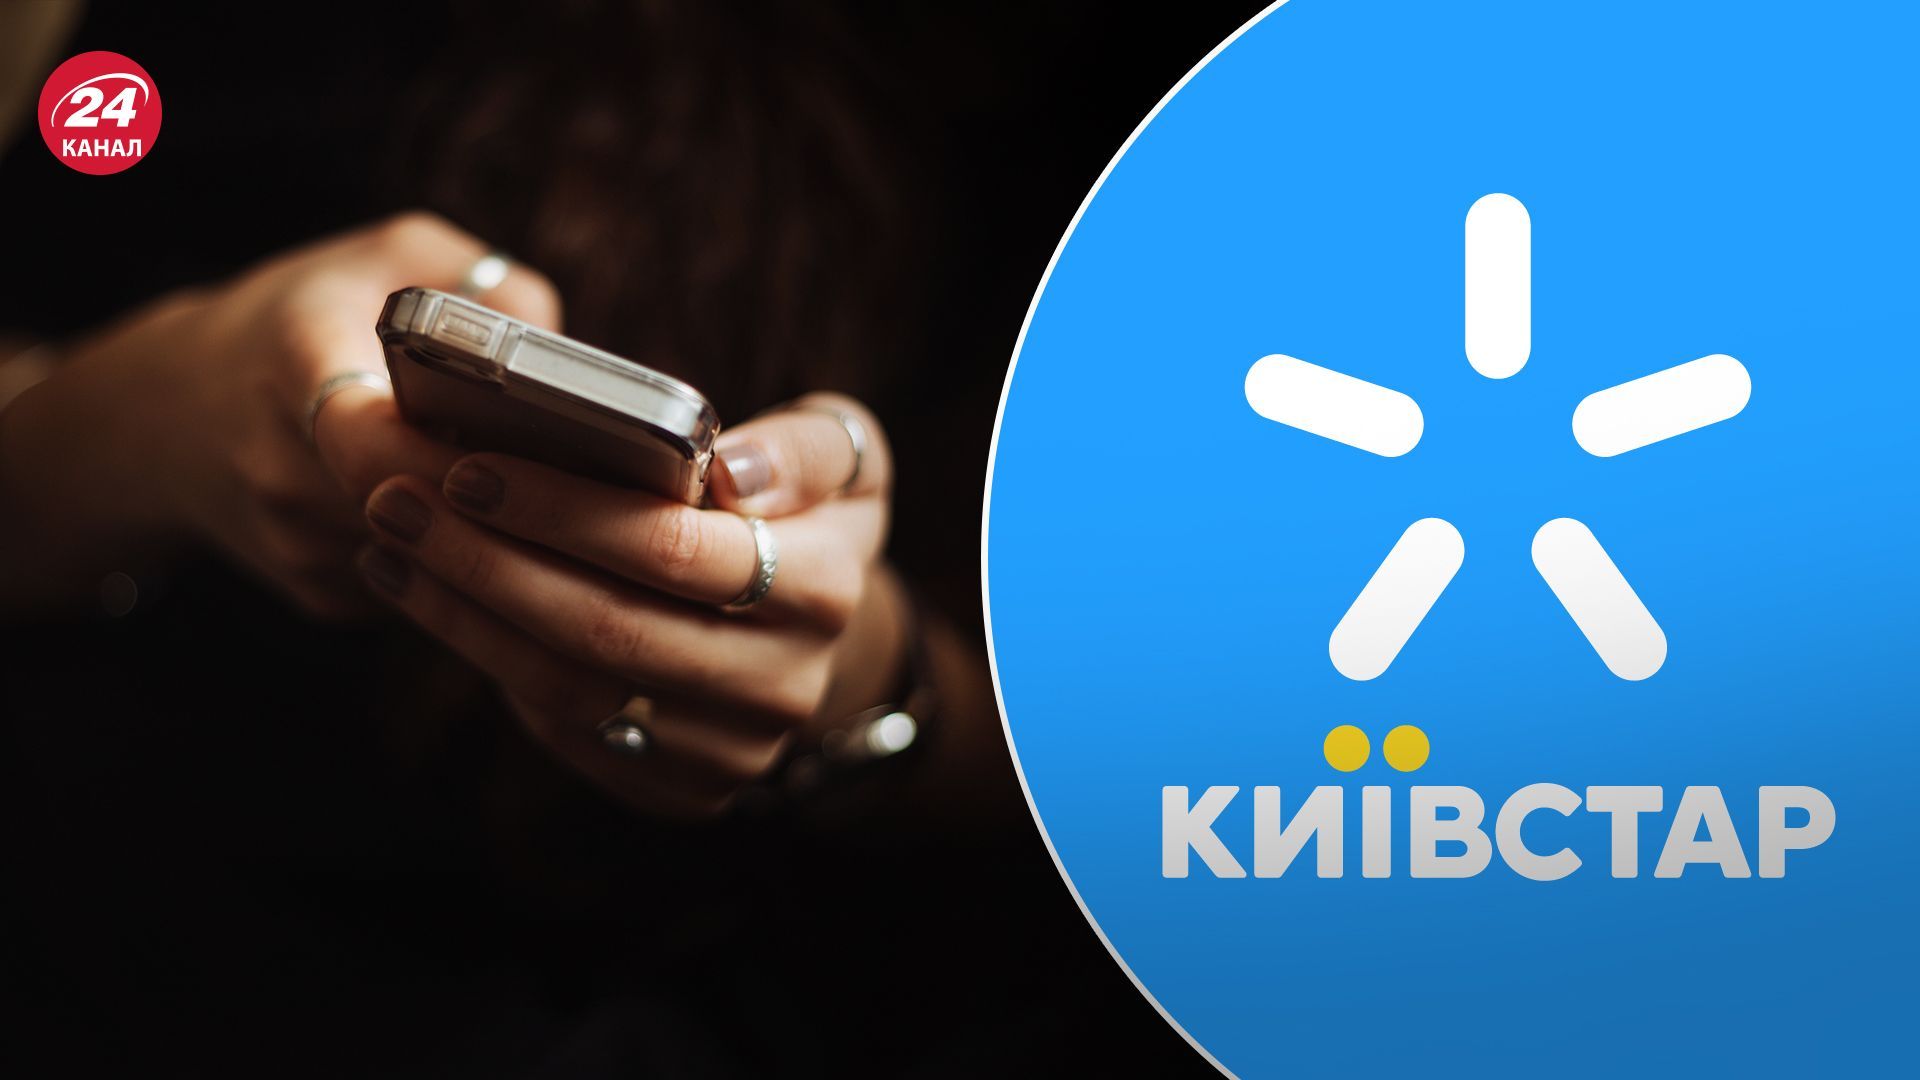 Київстар нарешті відновив роботу: з'явився зв'язок і мобільний інтернет - Техно